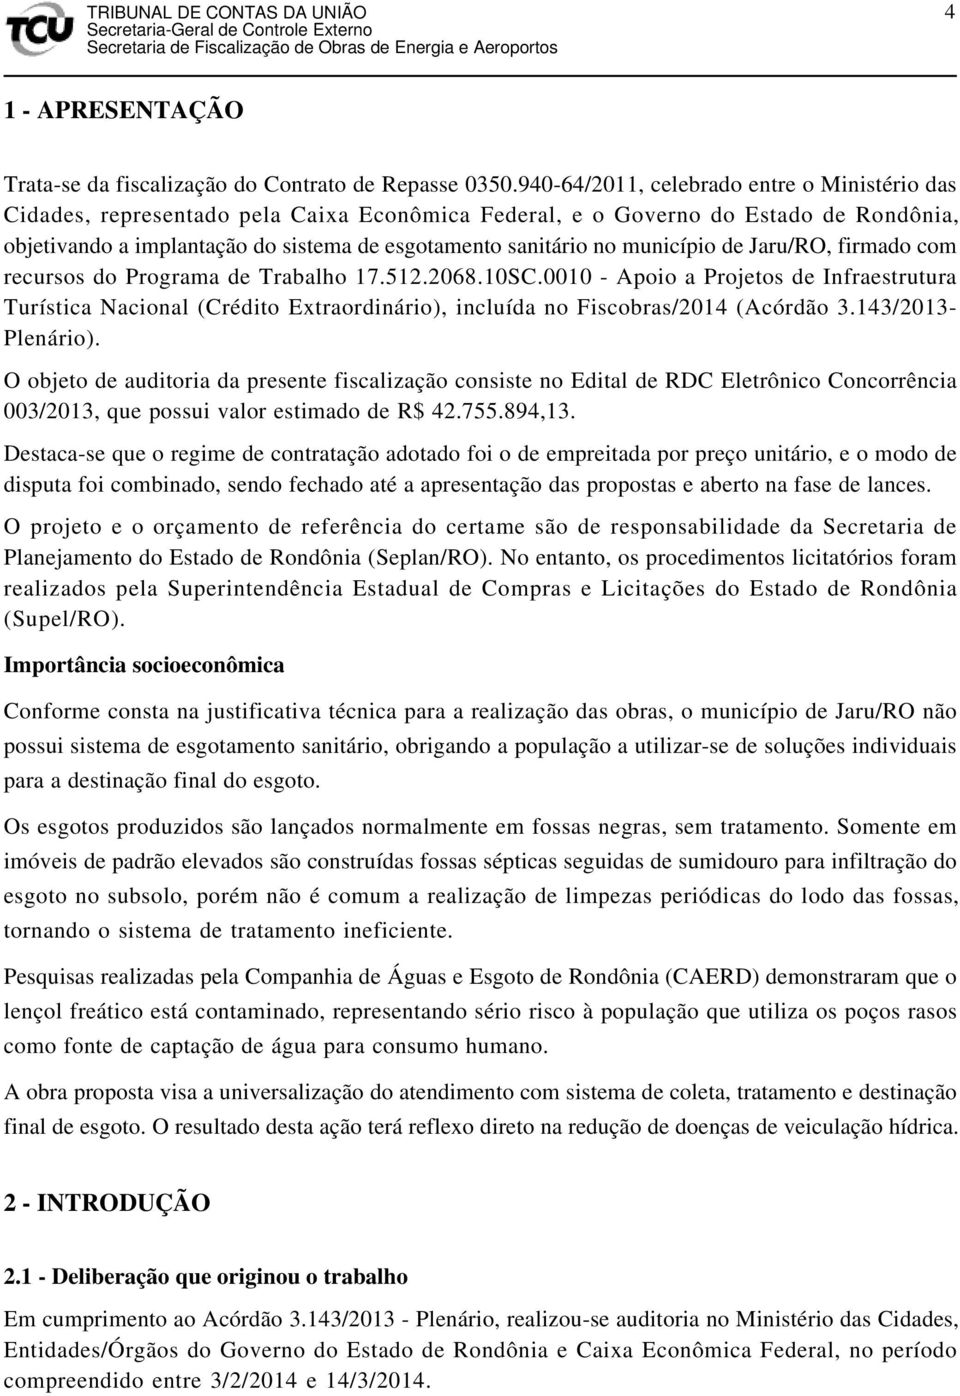 município de Jaru/RO, firmado com recursos do Programa de Trabalho 17.512.2068.10SC.